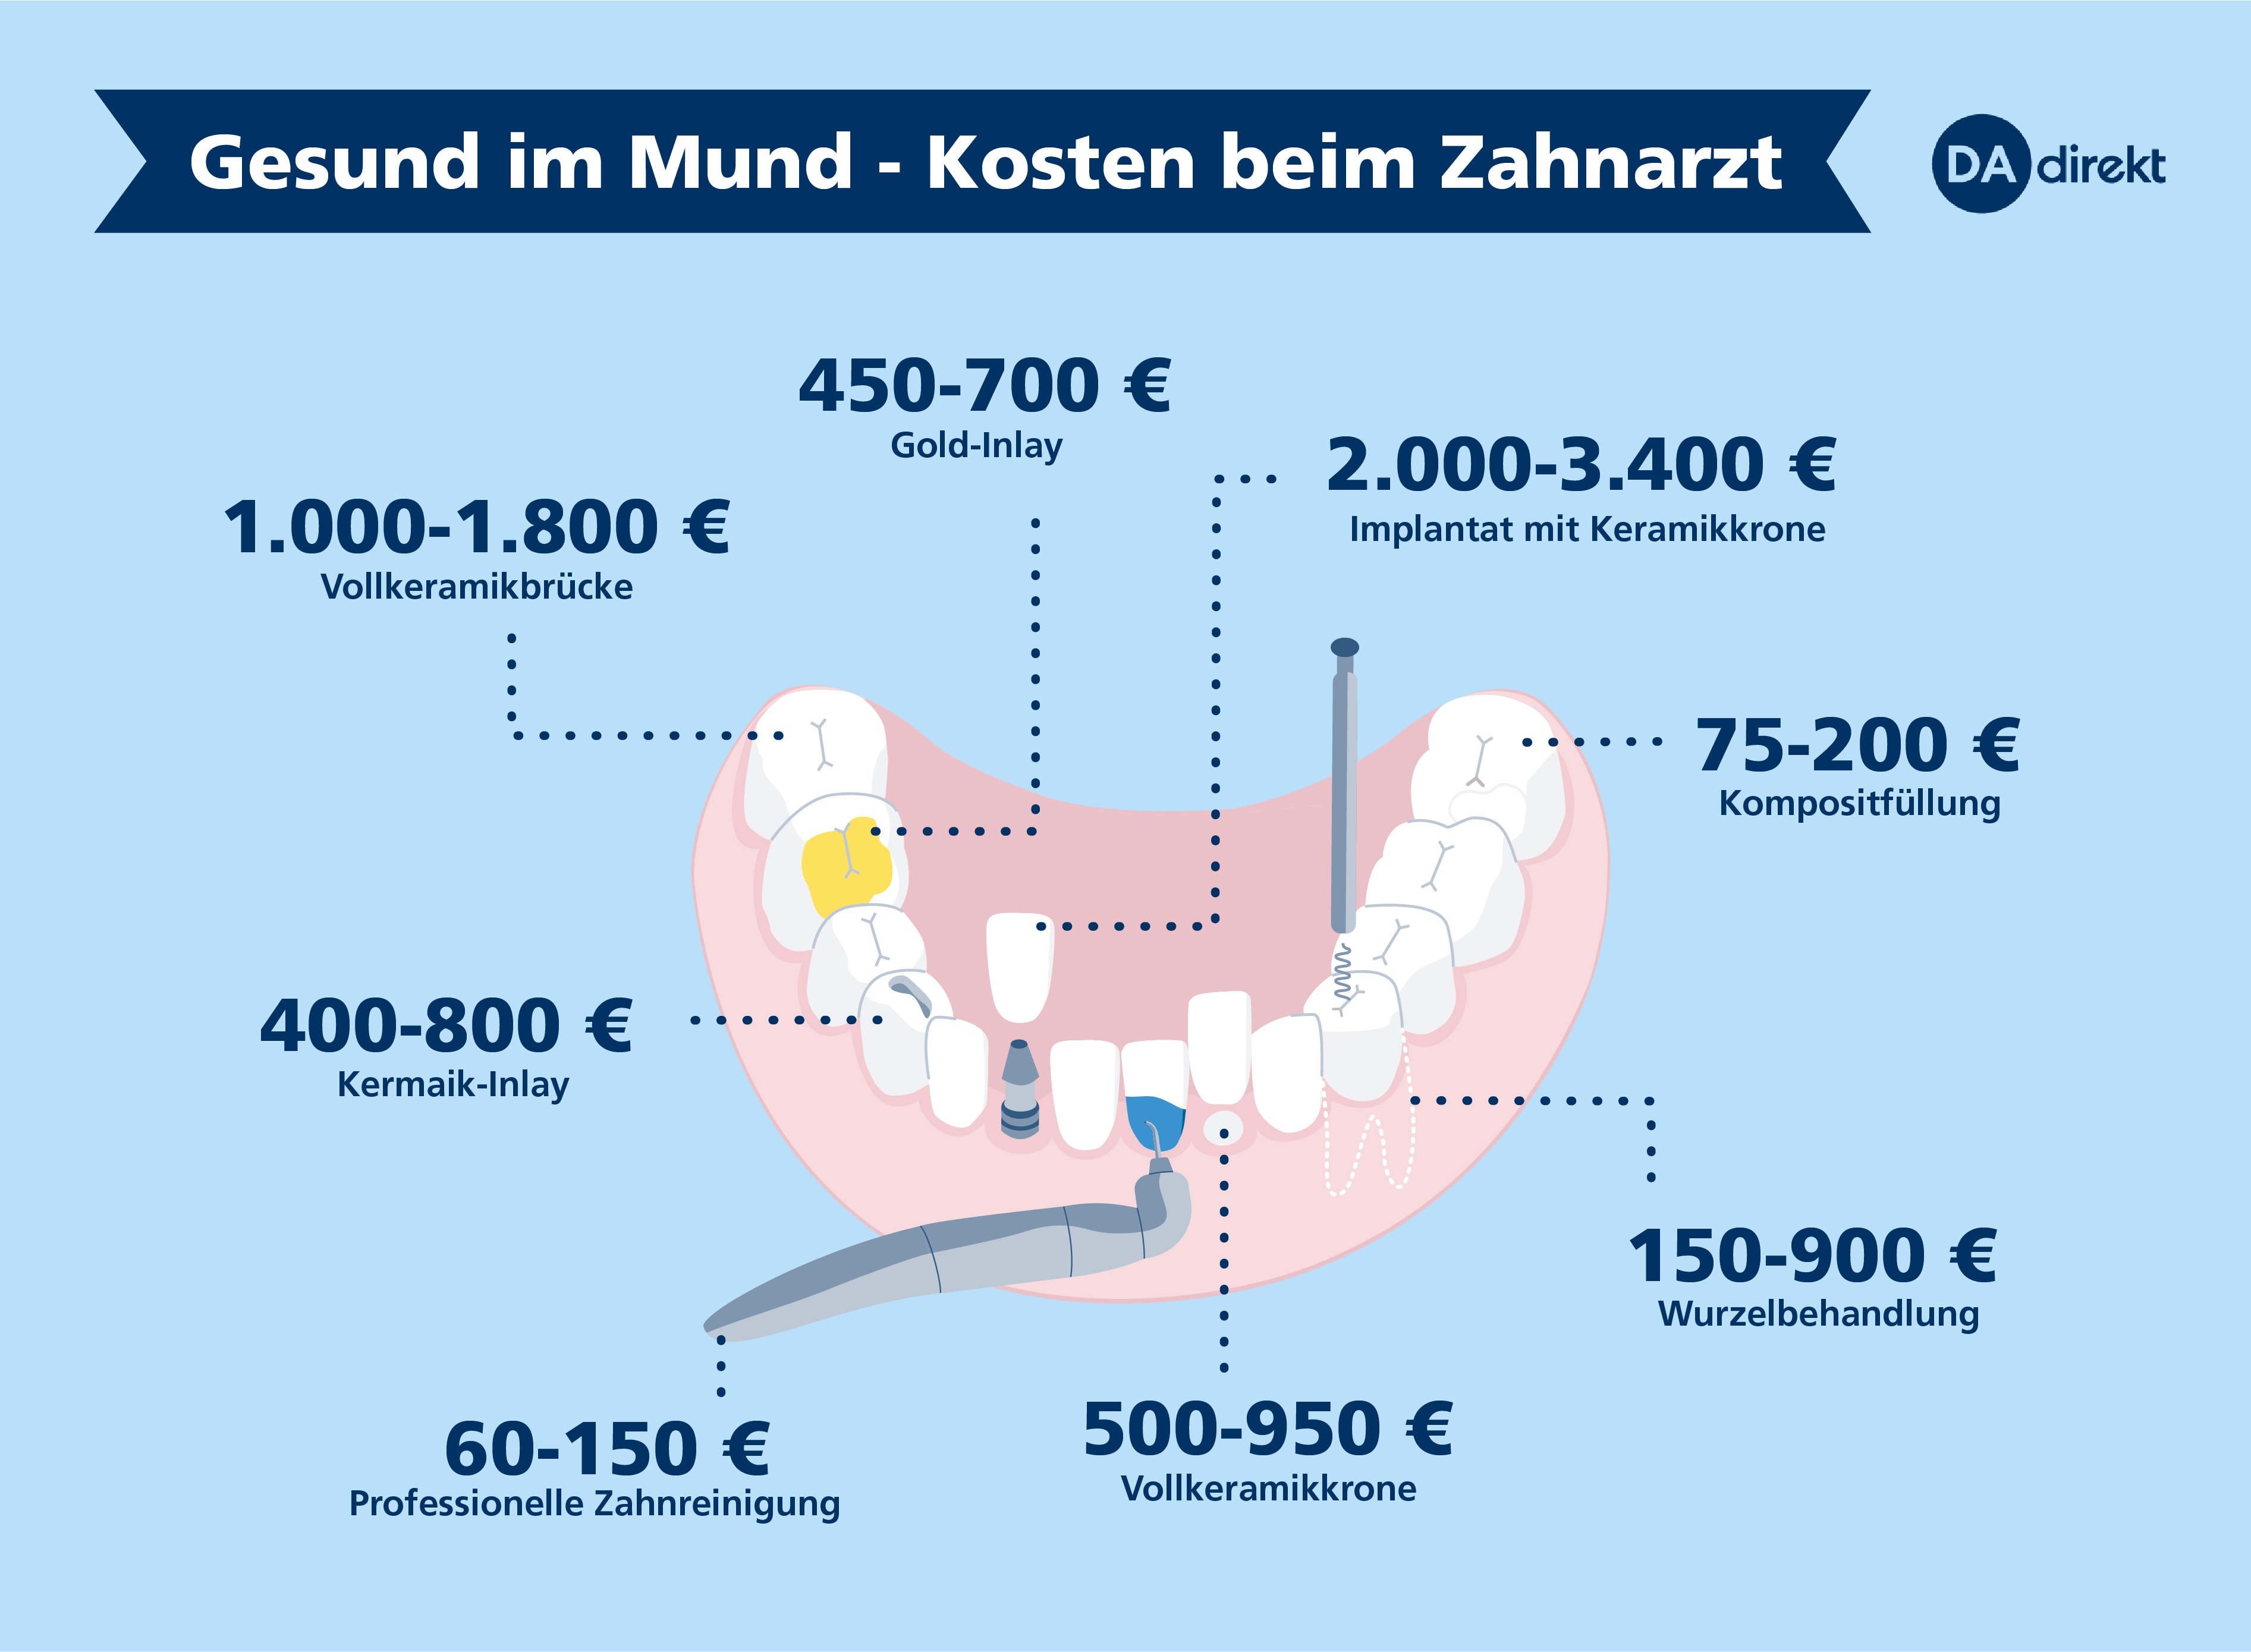 Gesund im Mund - Übersicht der Kosten beim Zahnarzt von DA Direkt.